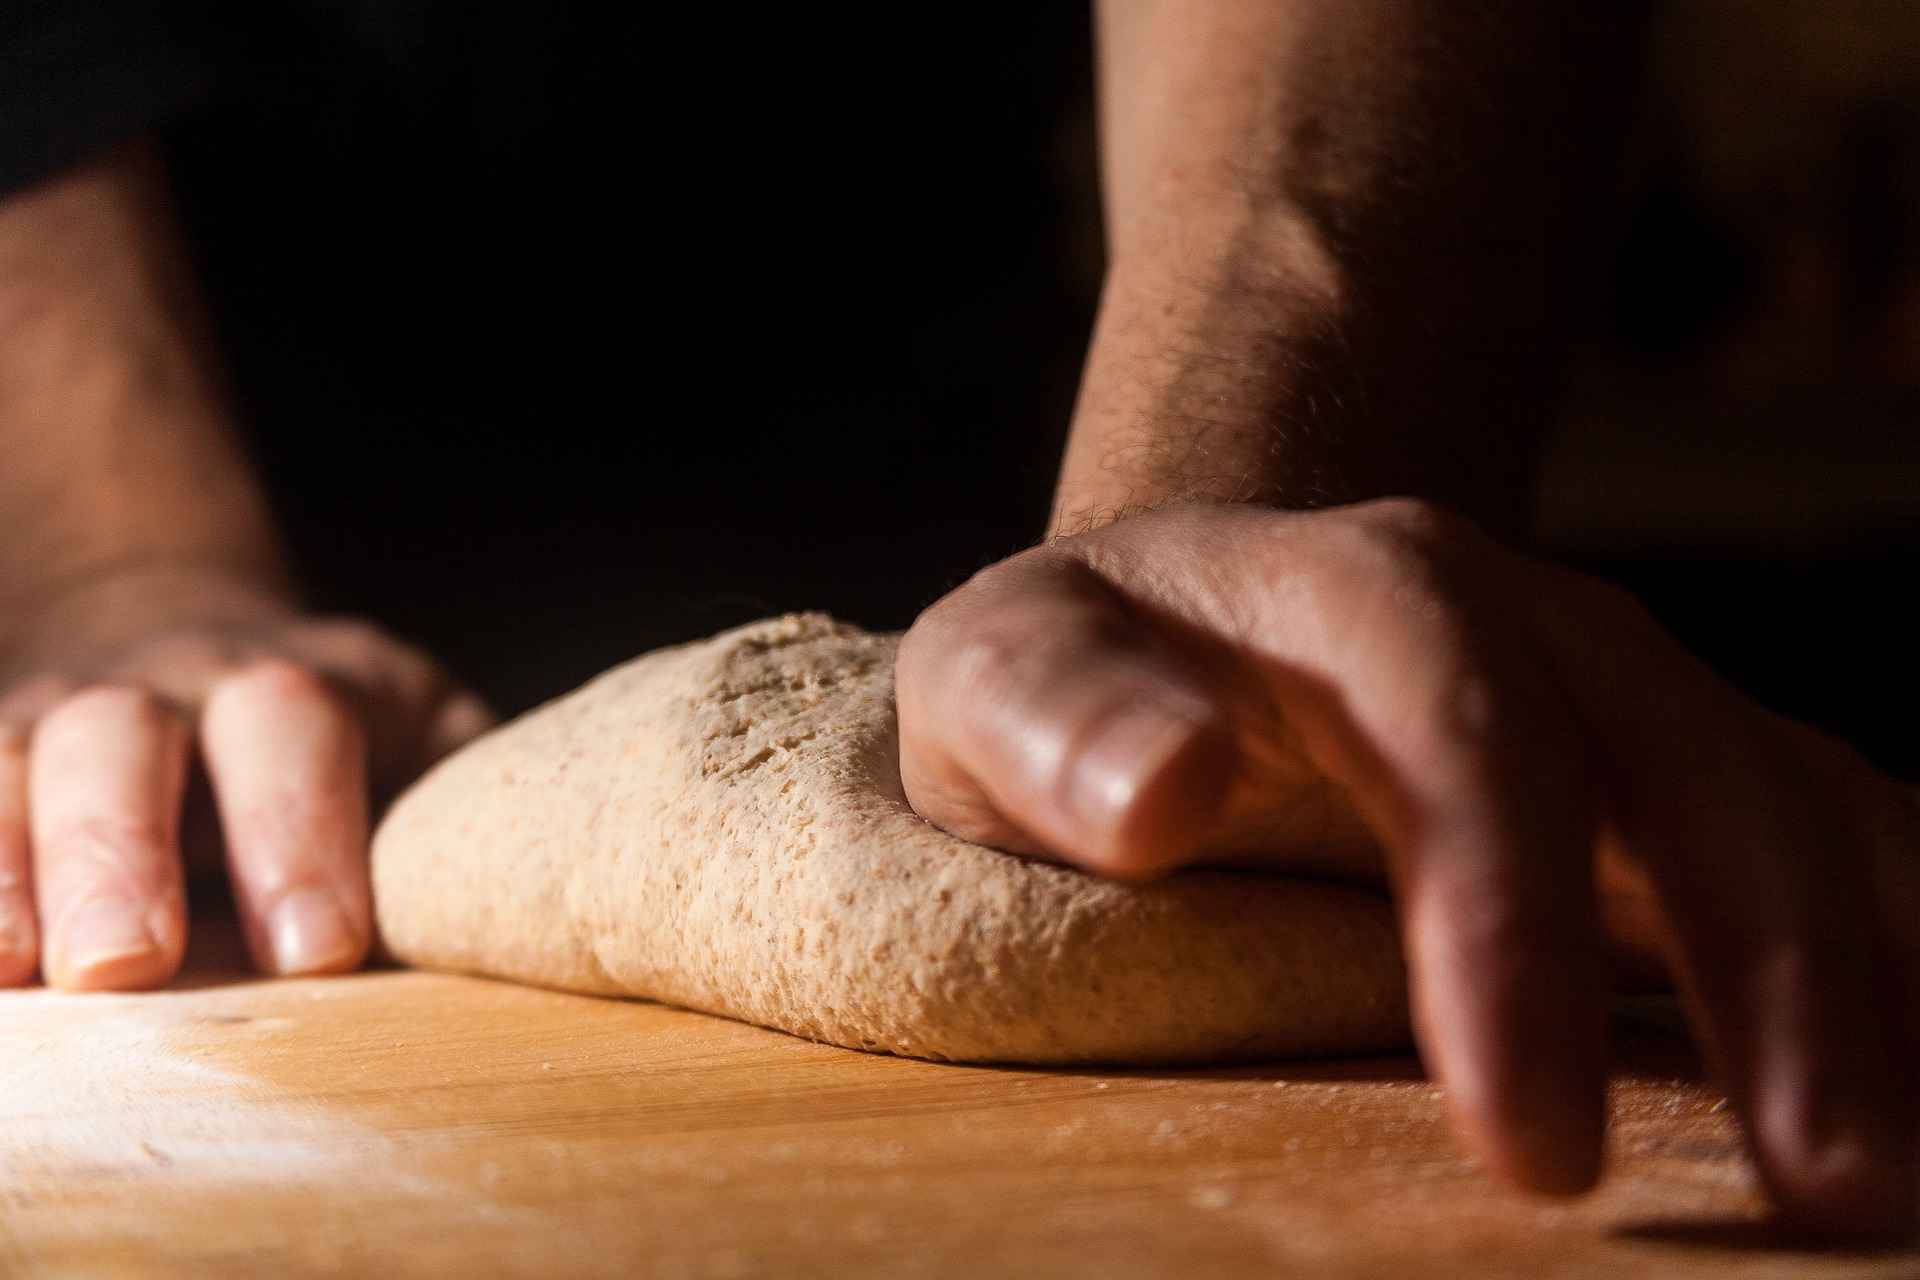 El sector panadero en España cada vez apuesta más por producciones cualitativas